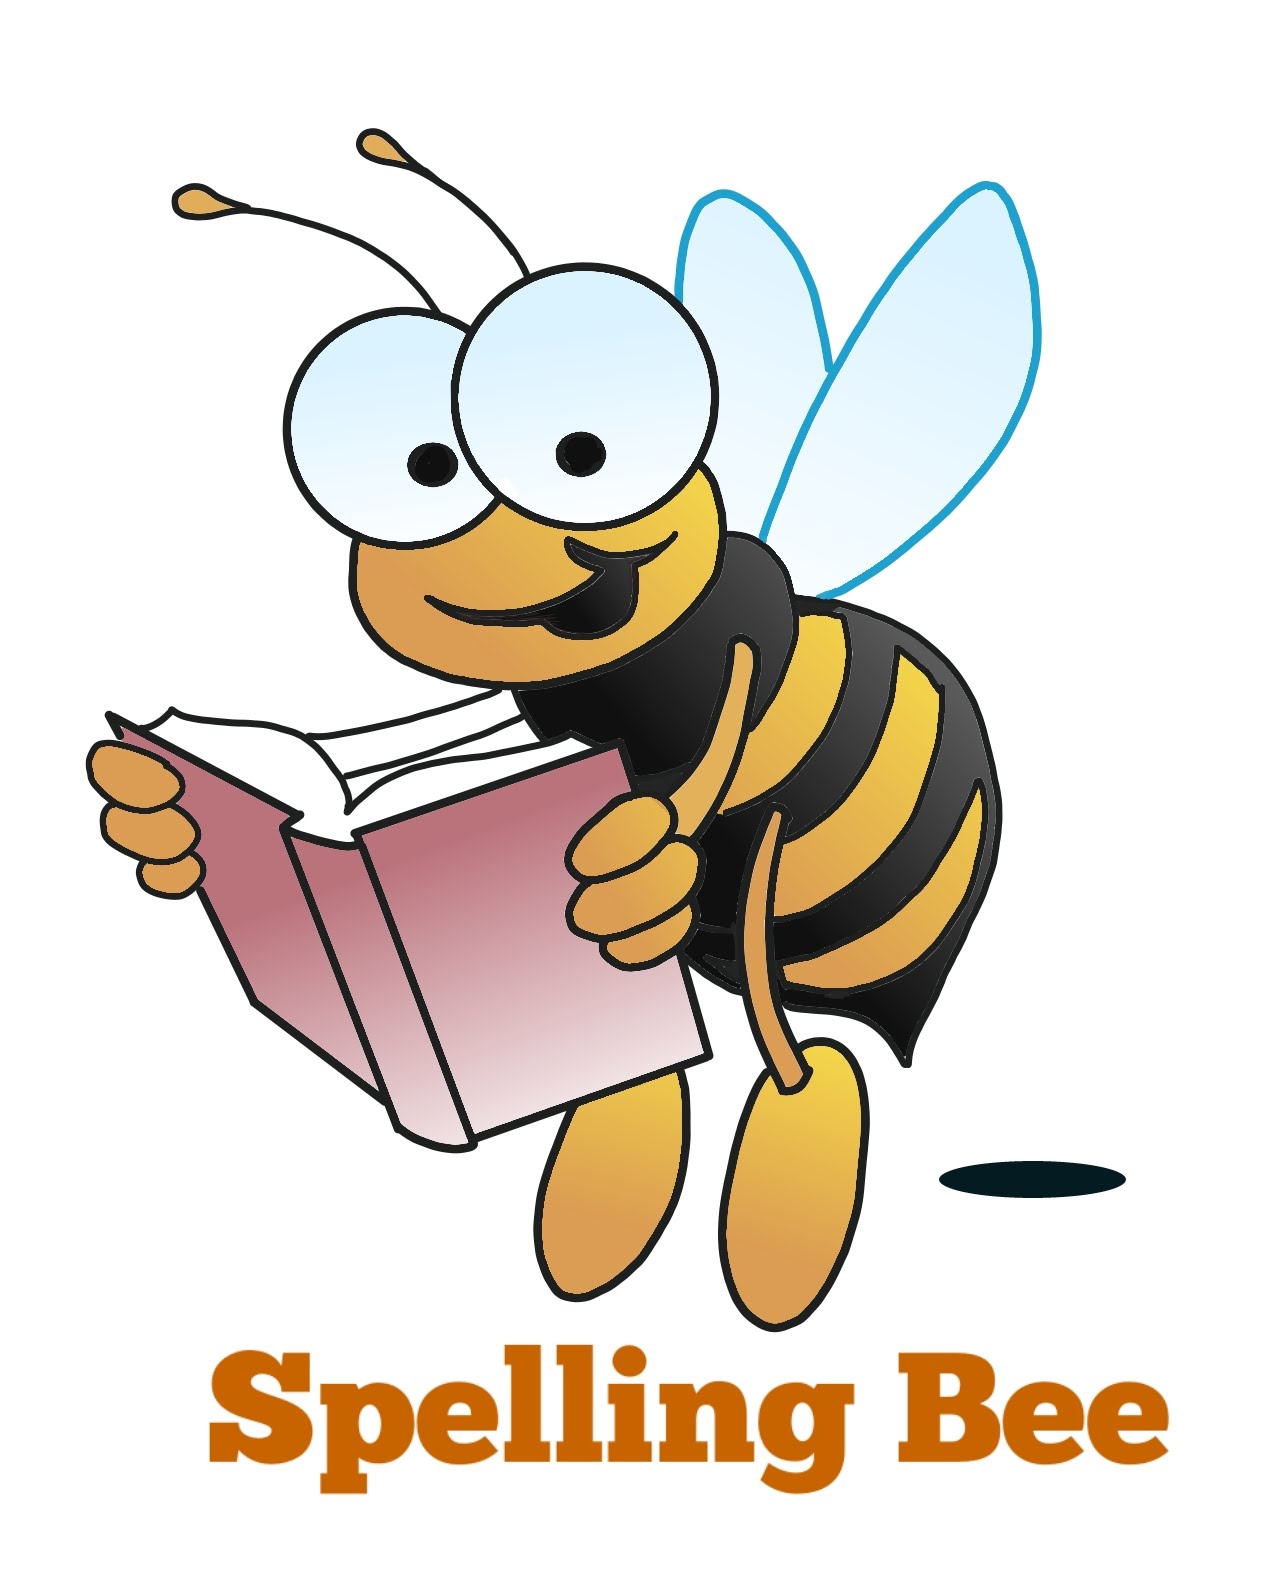 Spelling Bee SpellQuiz